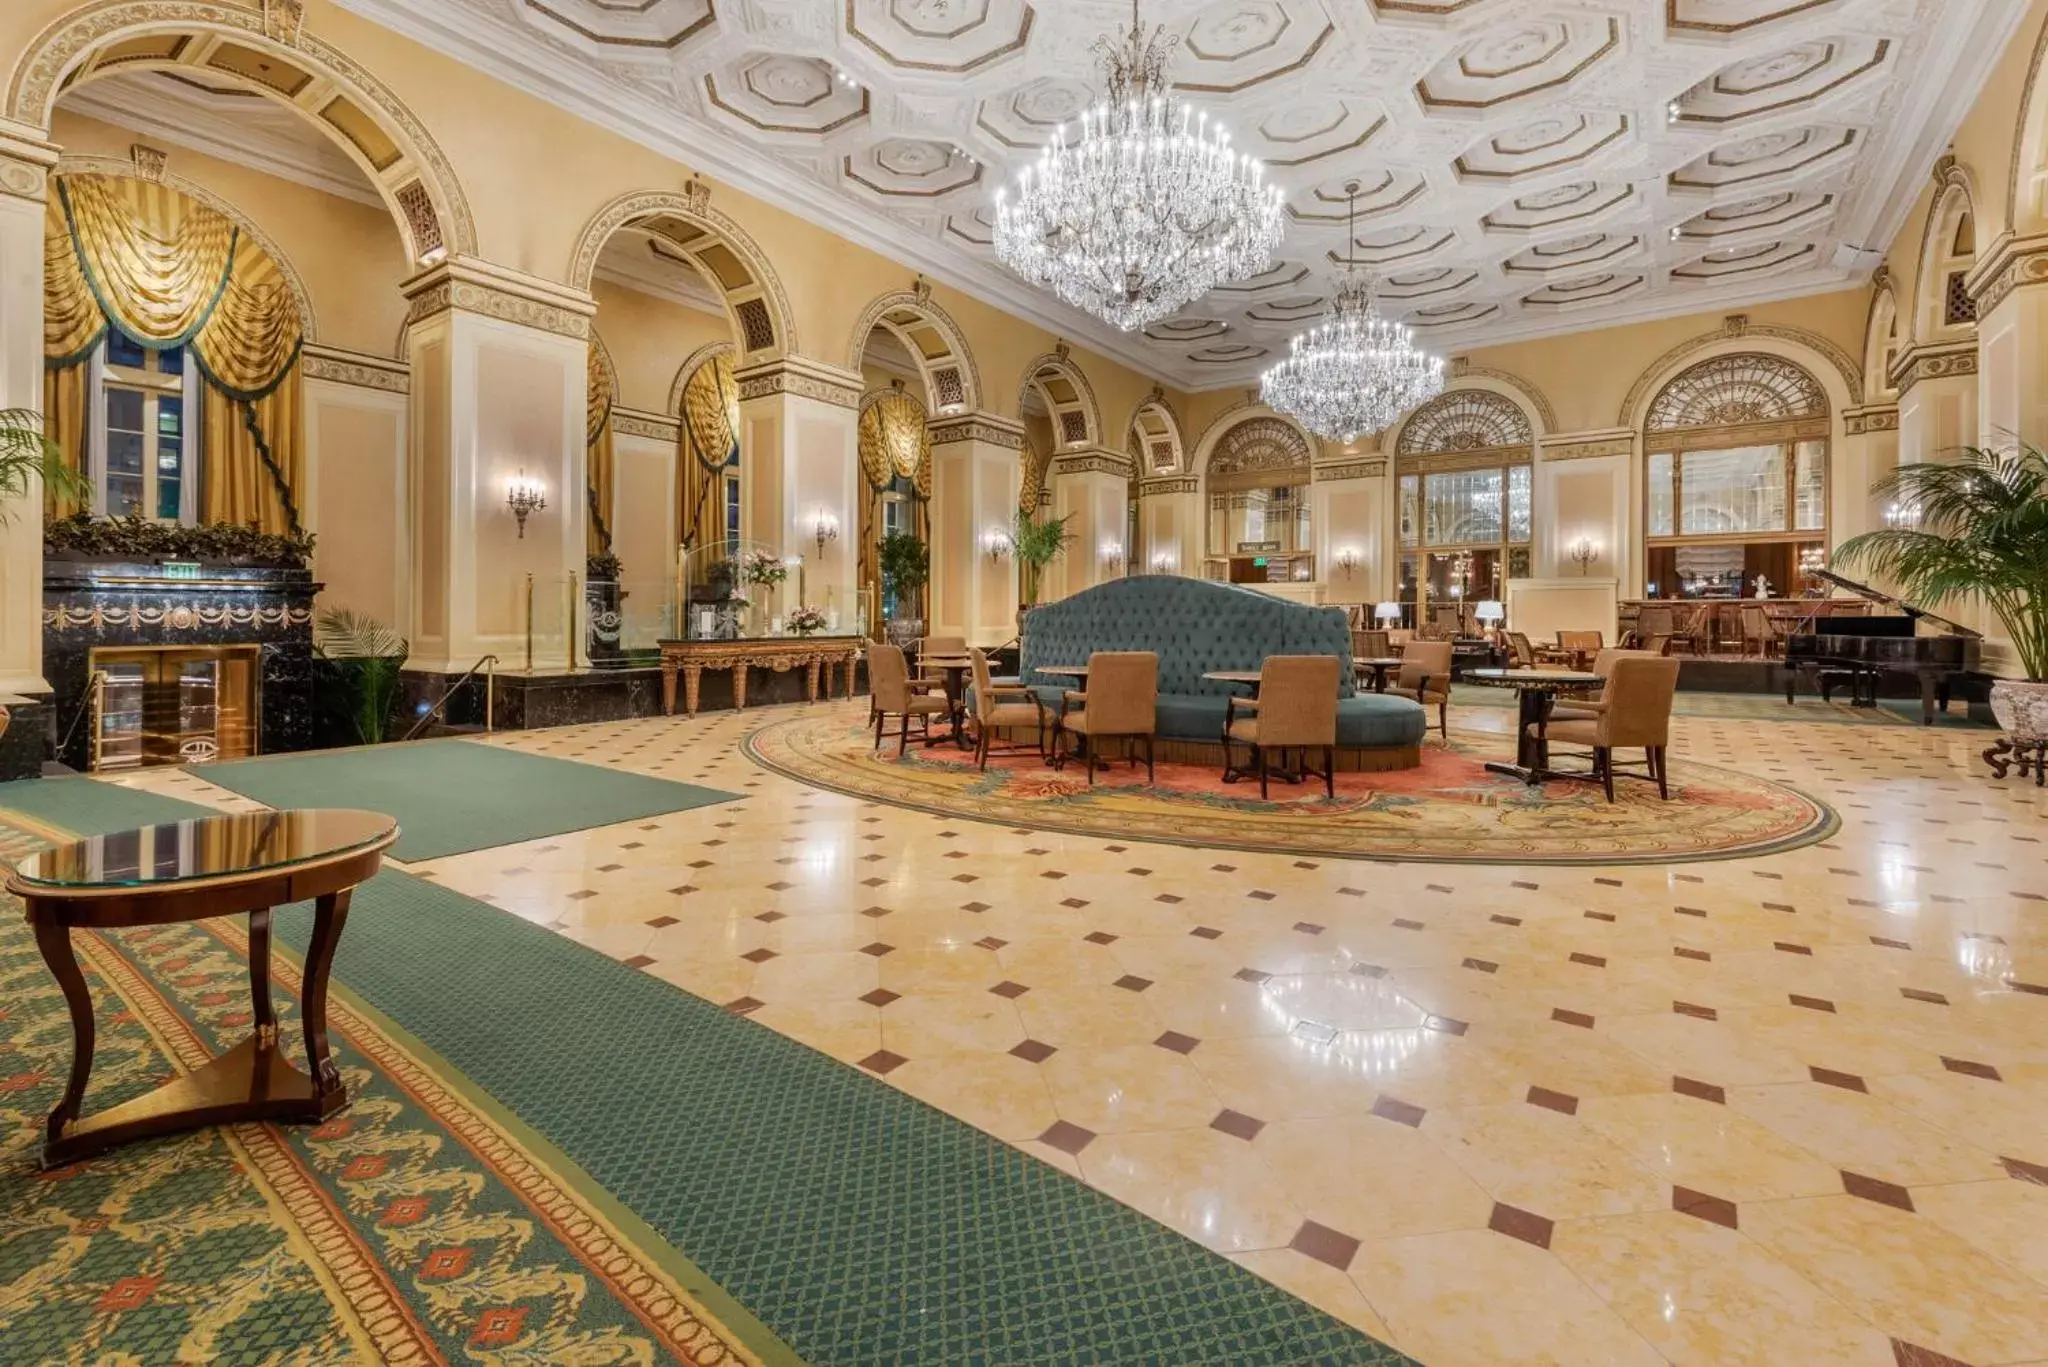 Lobby or reception in Omni William Penn Hotel